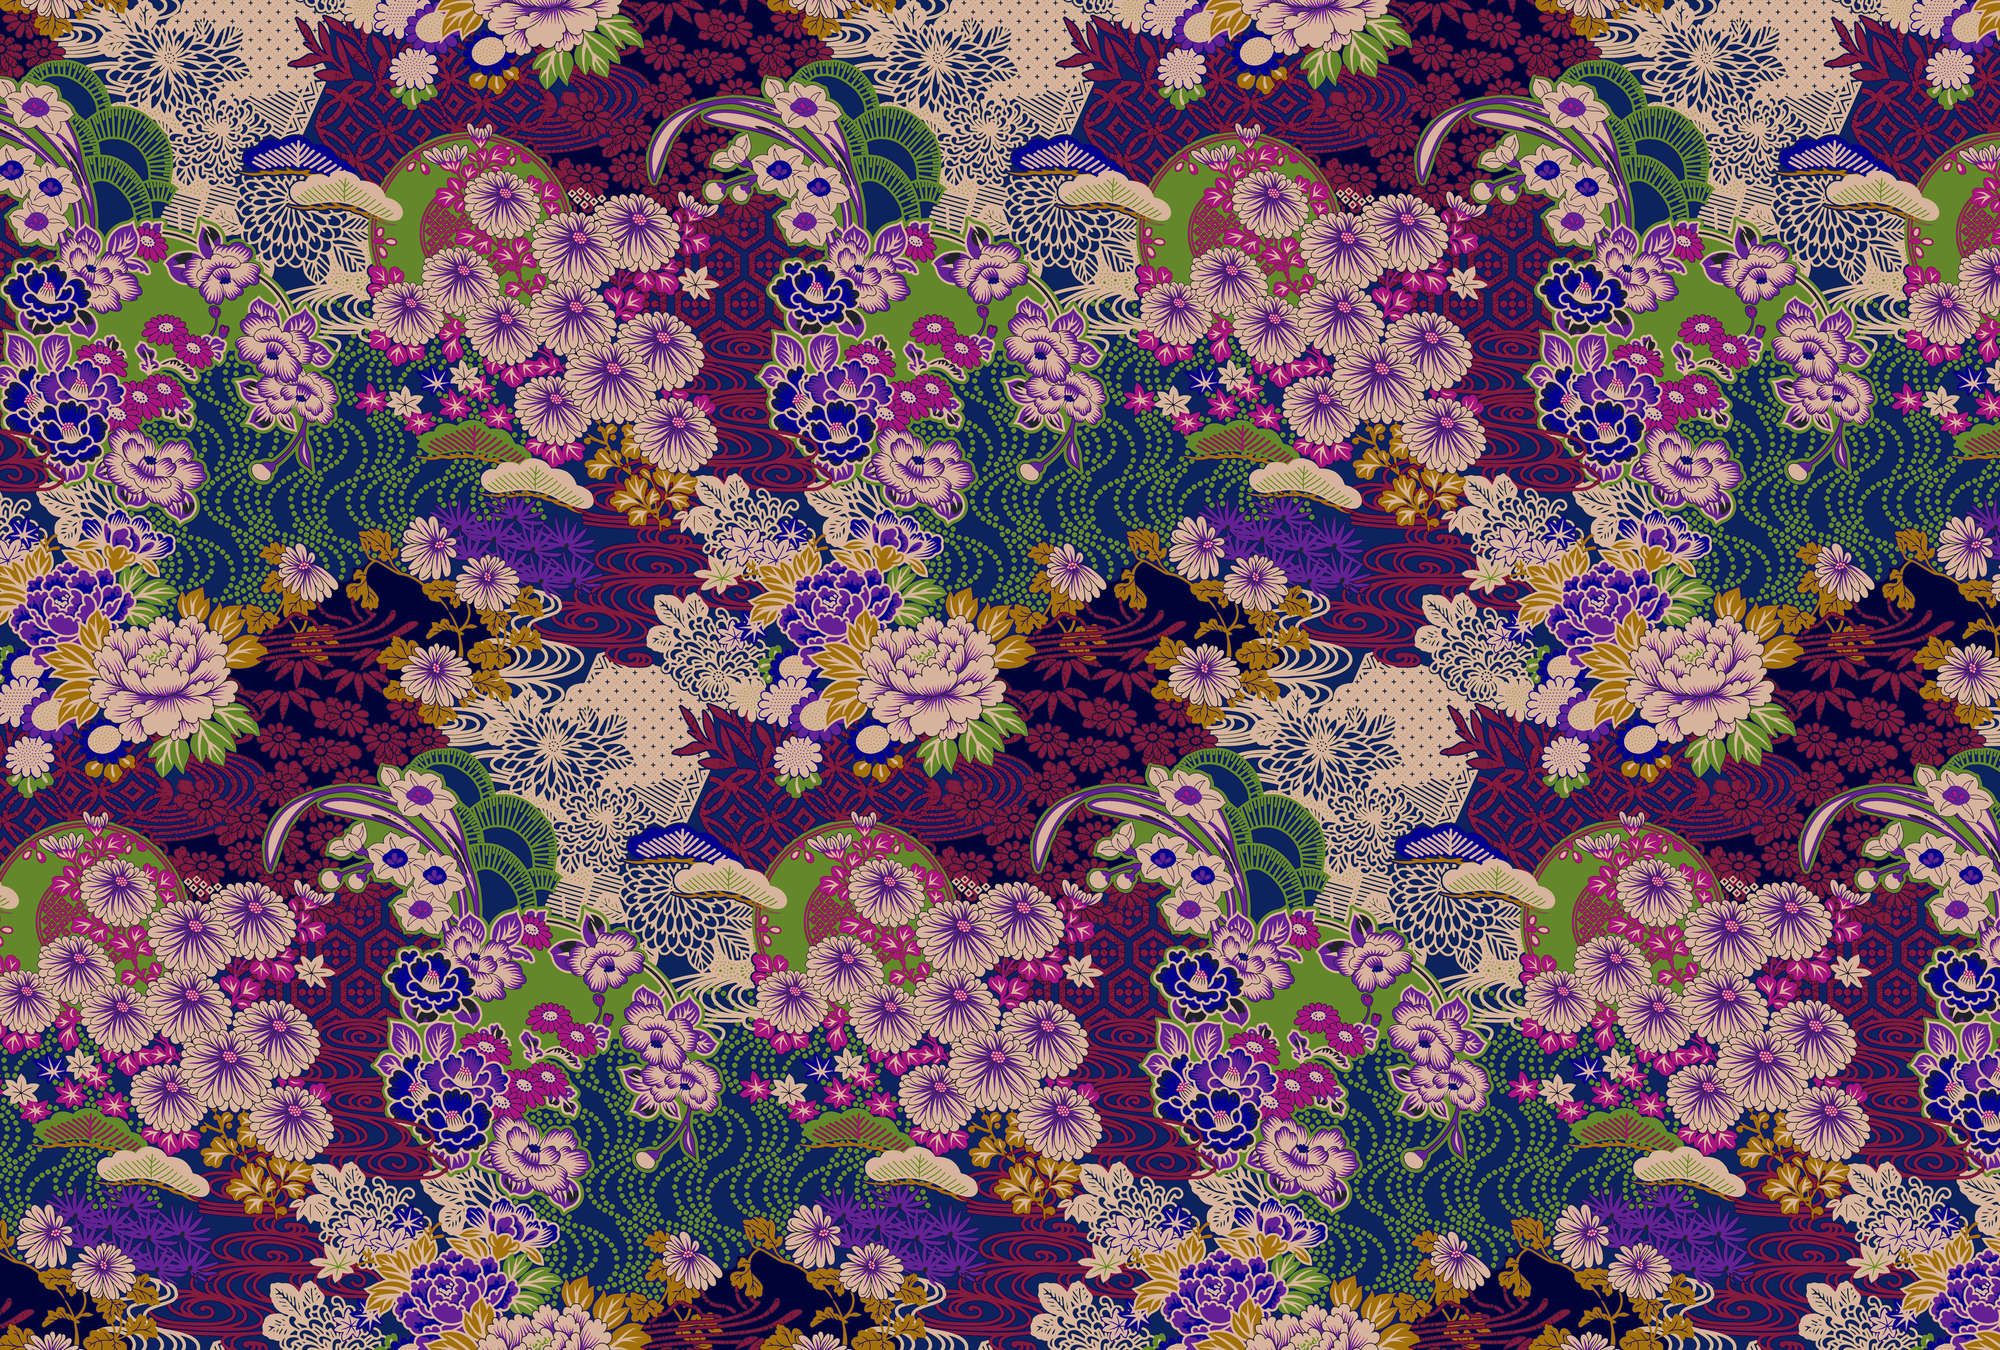             Digital behang »kimo 2« - Abstract bloemenkunstwerk - Paars, Groen | Mat, Vlieseline
        